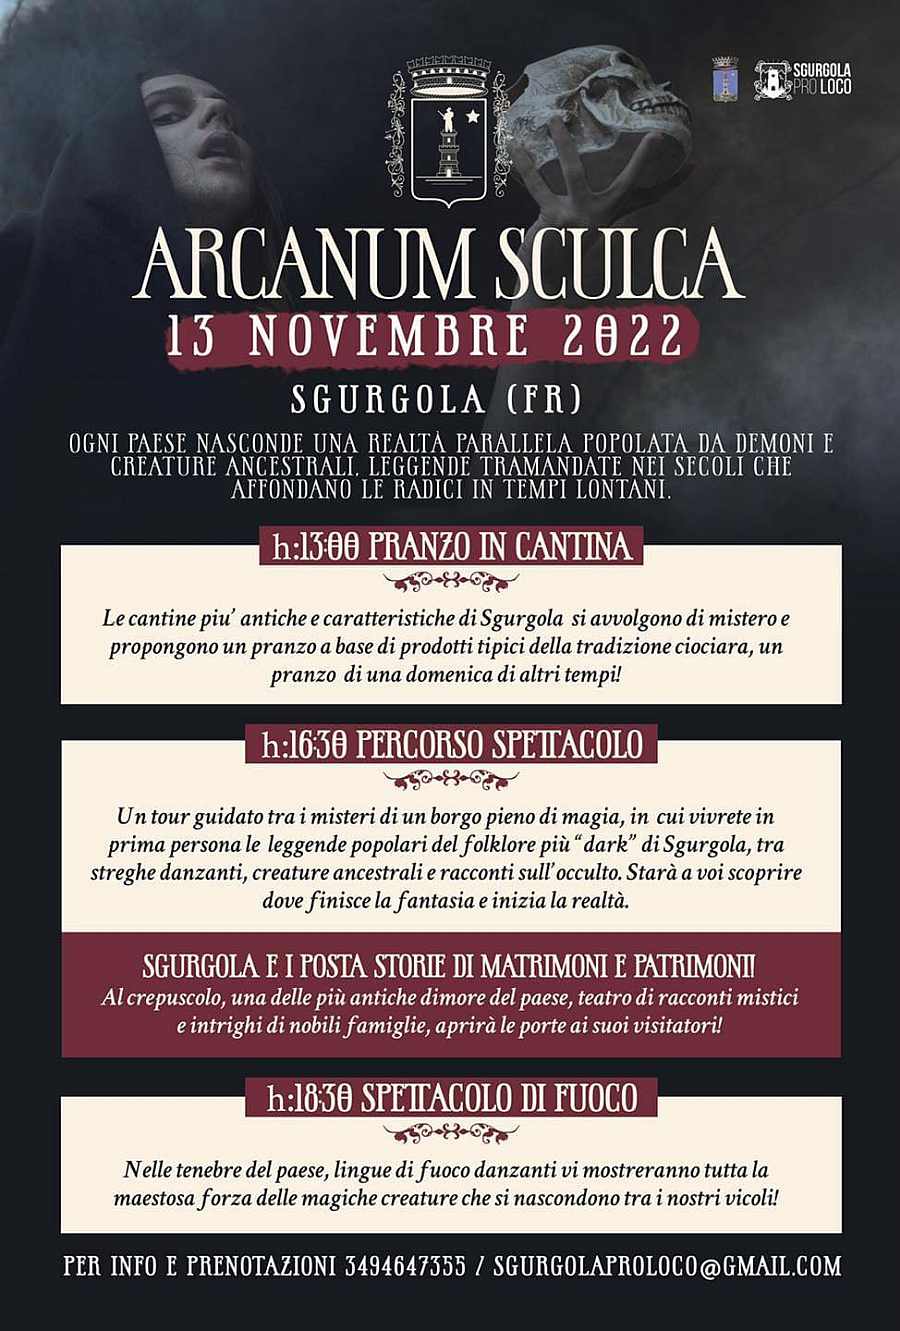 Sgurgola (FR)
"Arcanum Sculca"
13 Novembre 2022